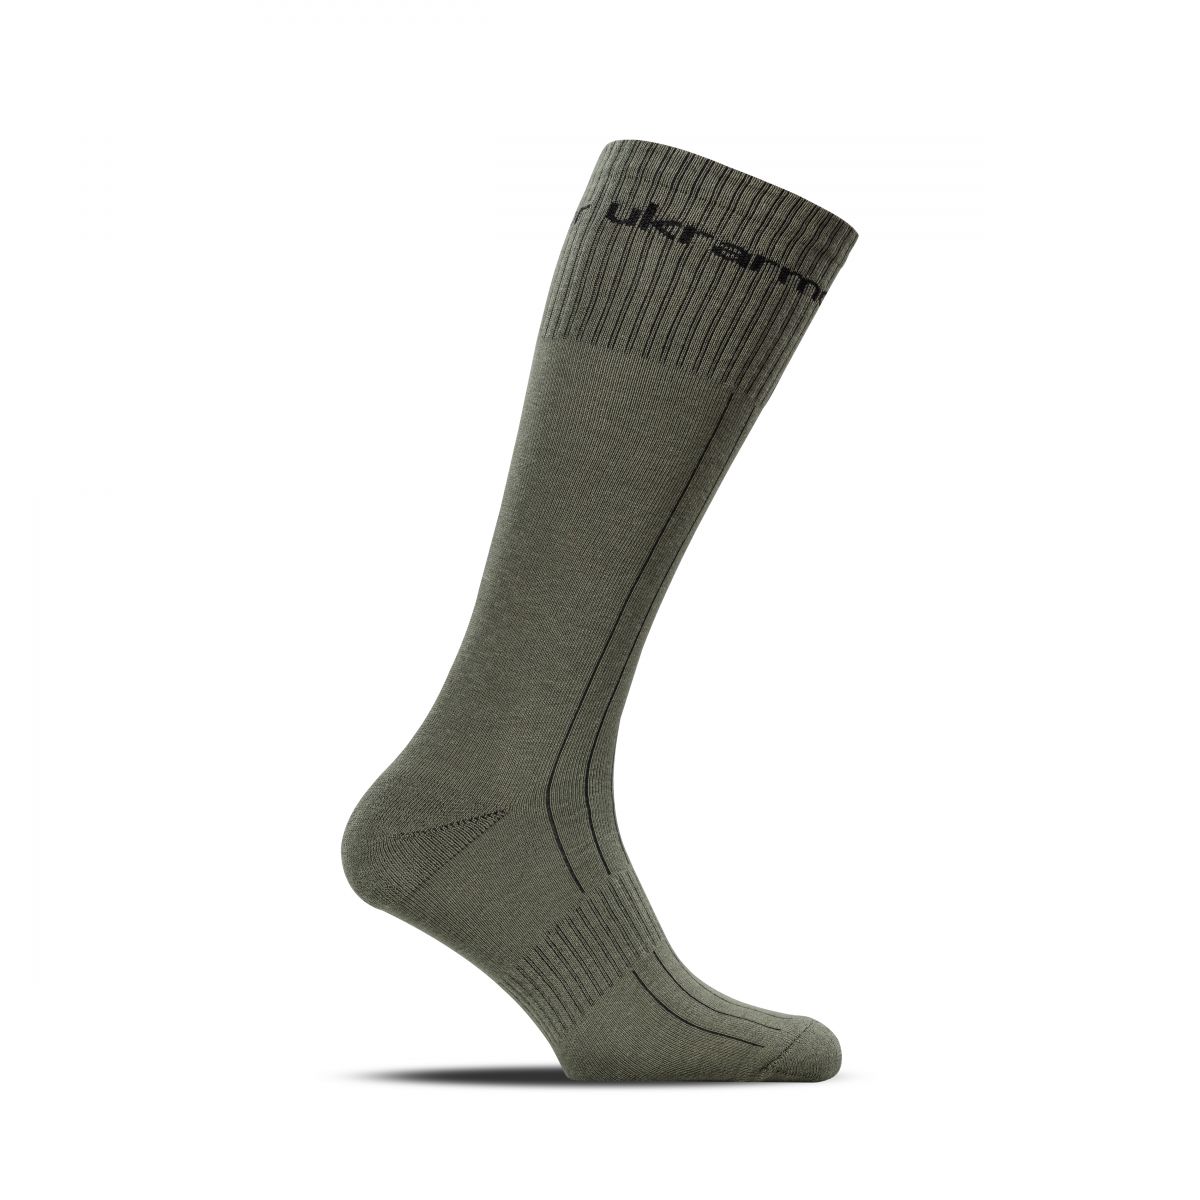 Військові шкарпетки Ukrarmor TTS (Tactical Terrain Socks). Аналог шкарпеток ЗСУ. Демісезонні. Олива. Розмір 41-43.